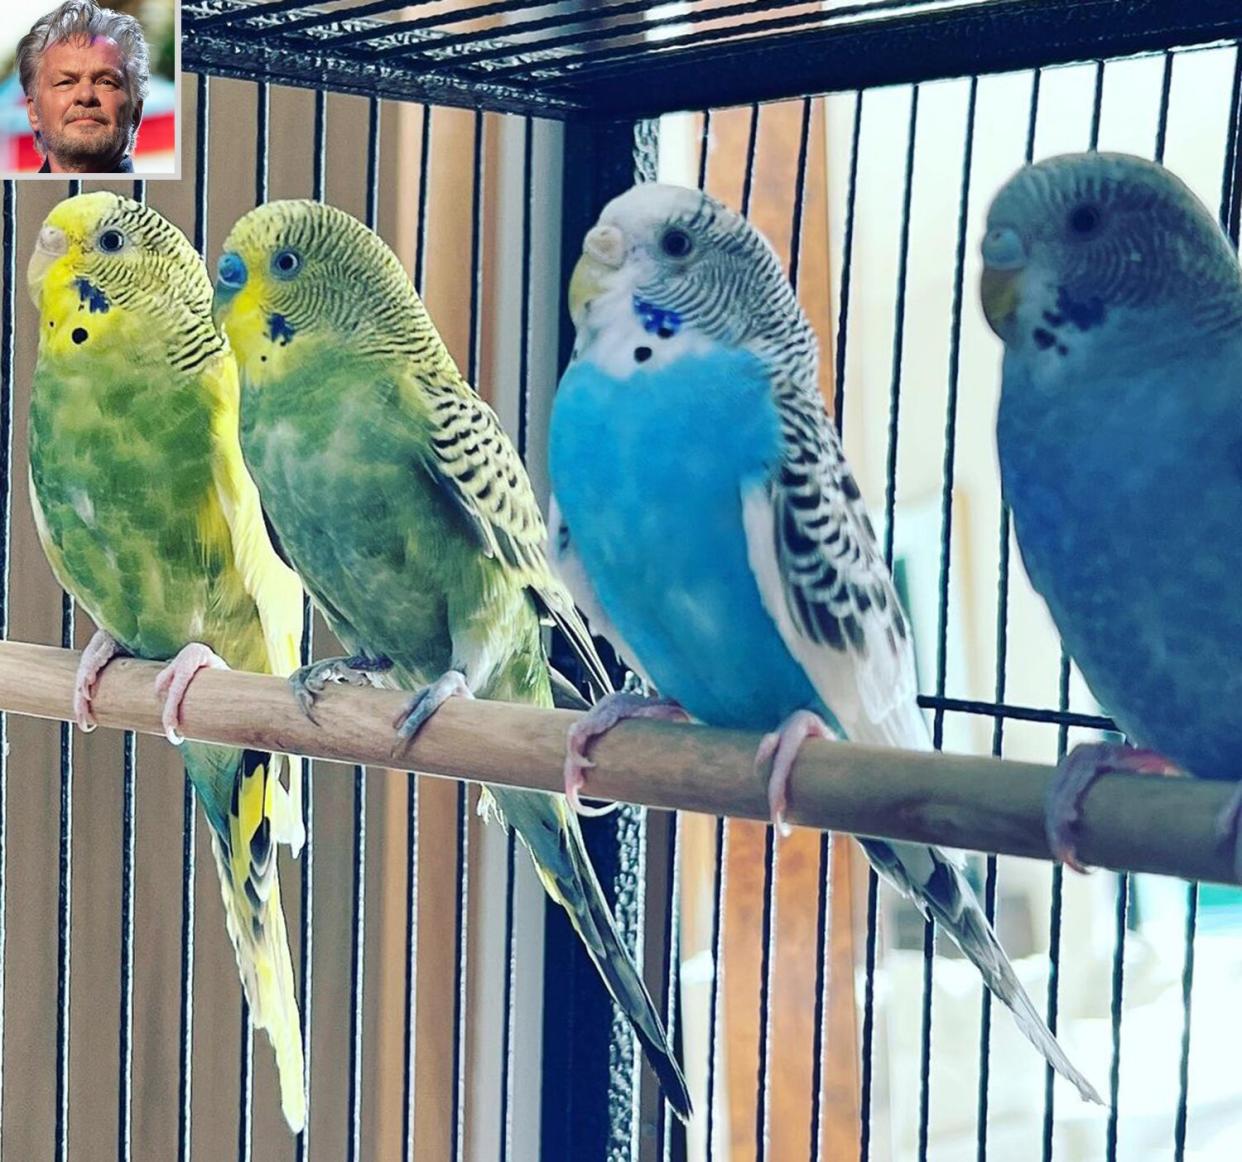 John Mellencamp gifted parakeets to his grandchildren for Easter